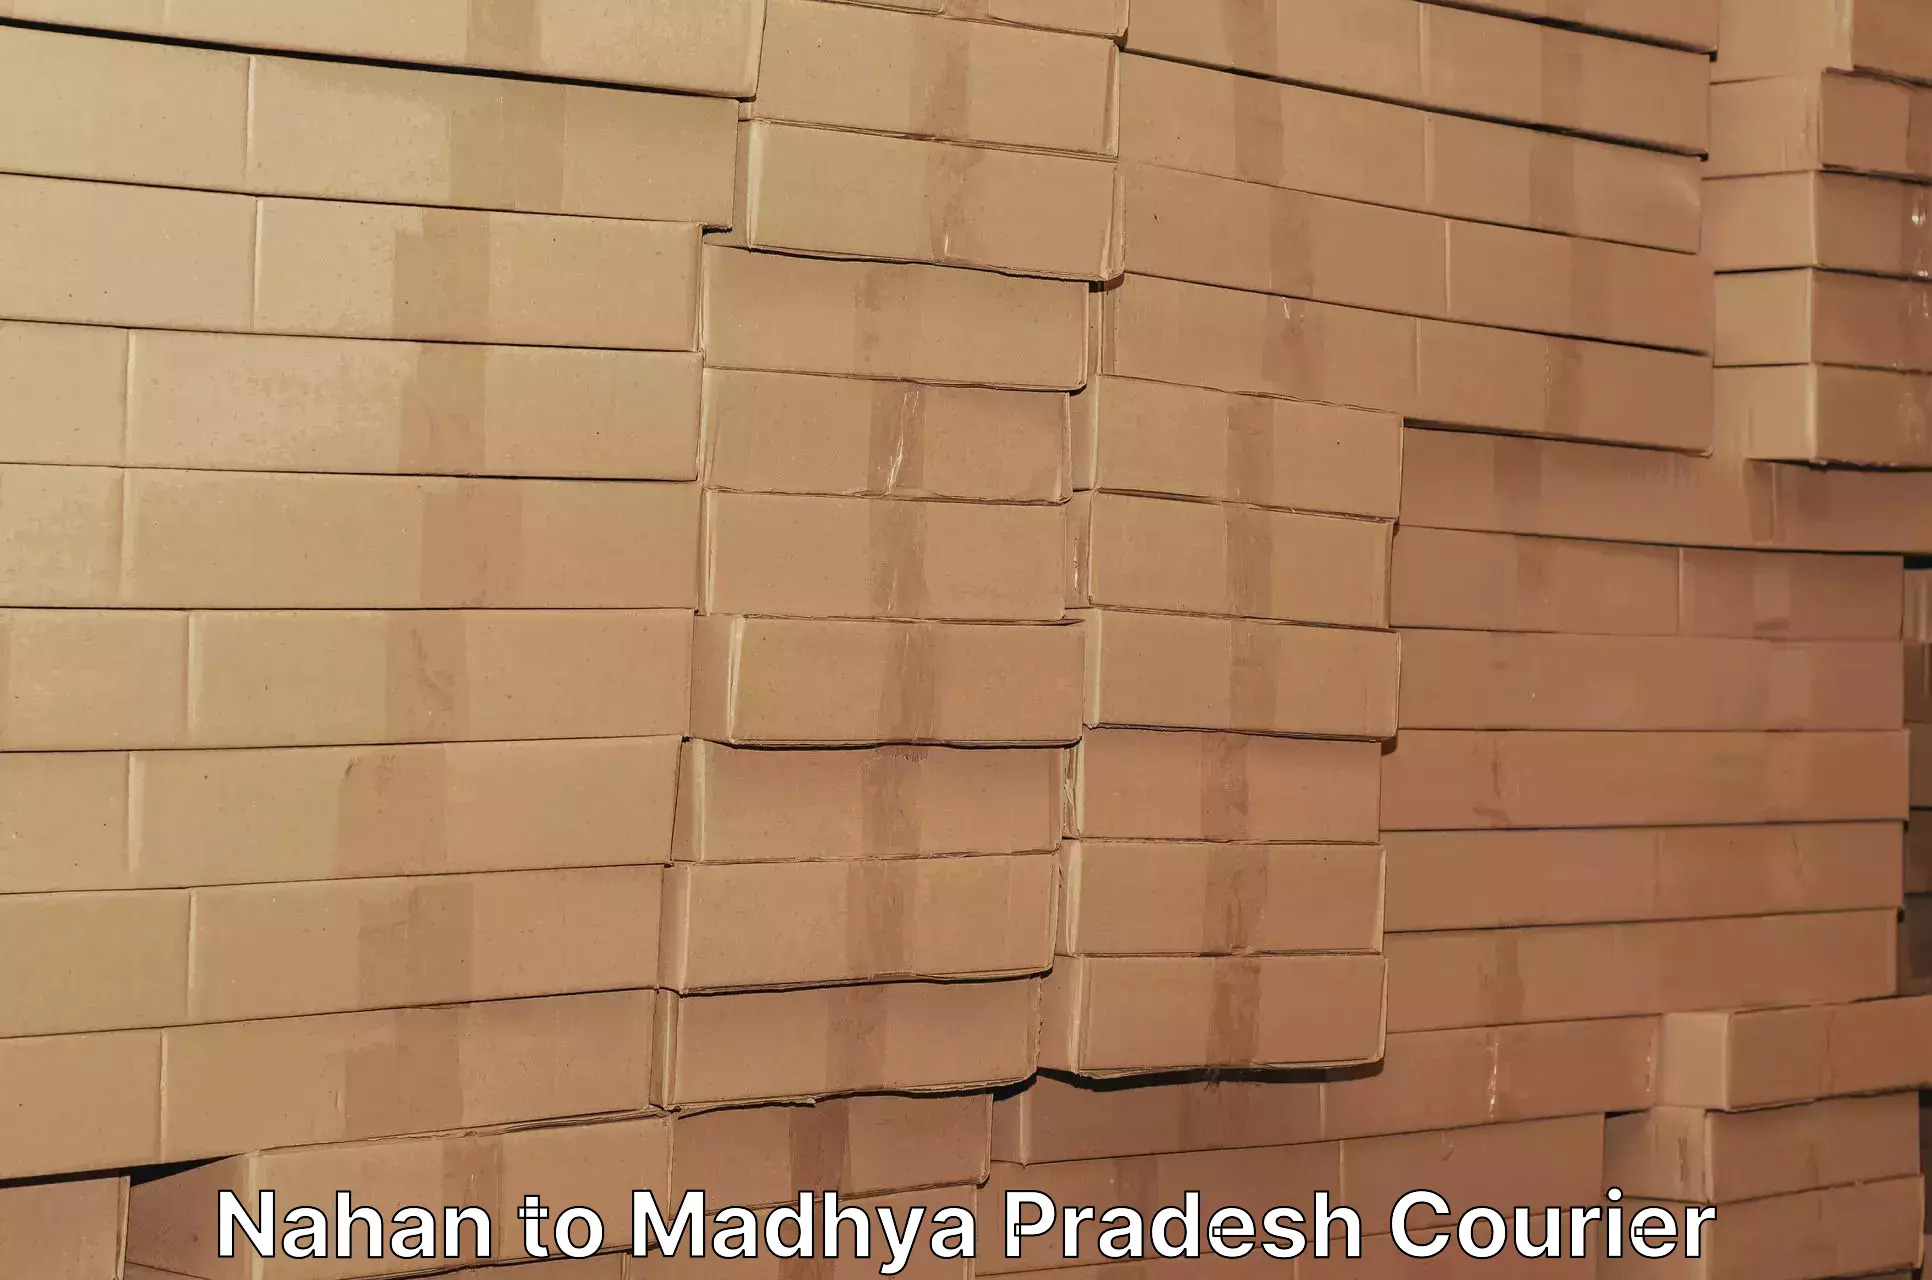 Door-to-door freight service Nahan to Madhya Pradesh